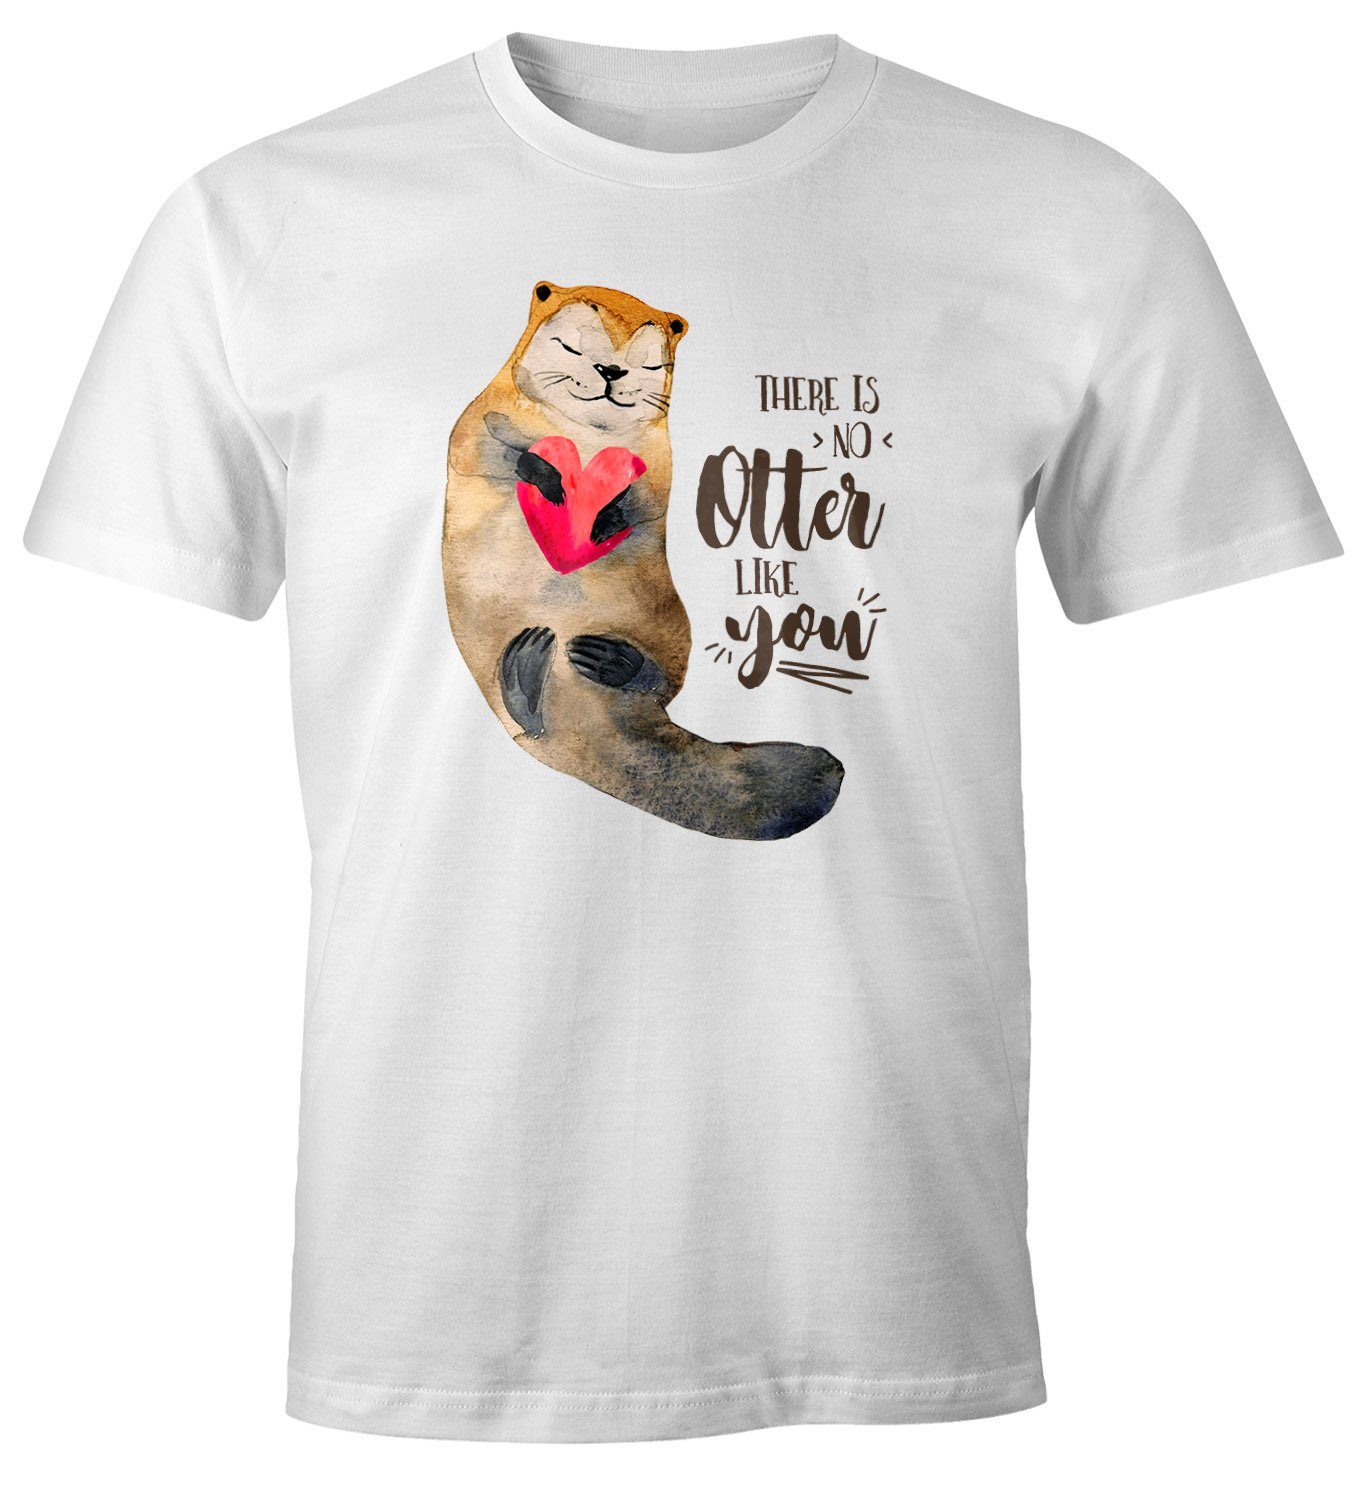 MoonWorks Print-Shirt Herren T-Shirt Geschenk Liebe There is no otter like you Spruch Love Quote lustig verliebt Freund Freundin Fun-Shirt Moonworks® mit Print | T-Shirts